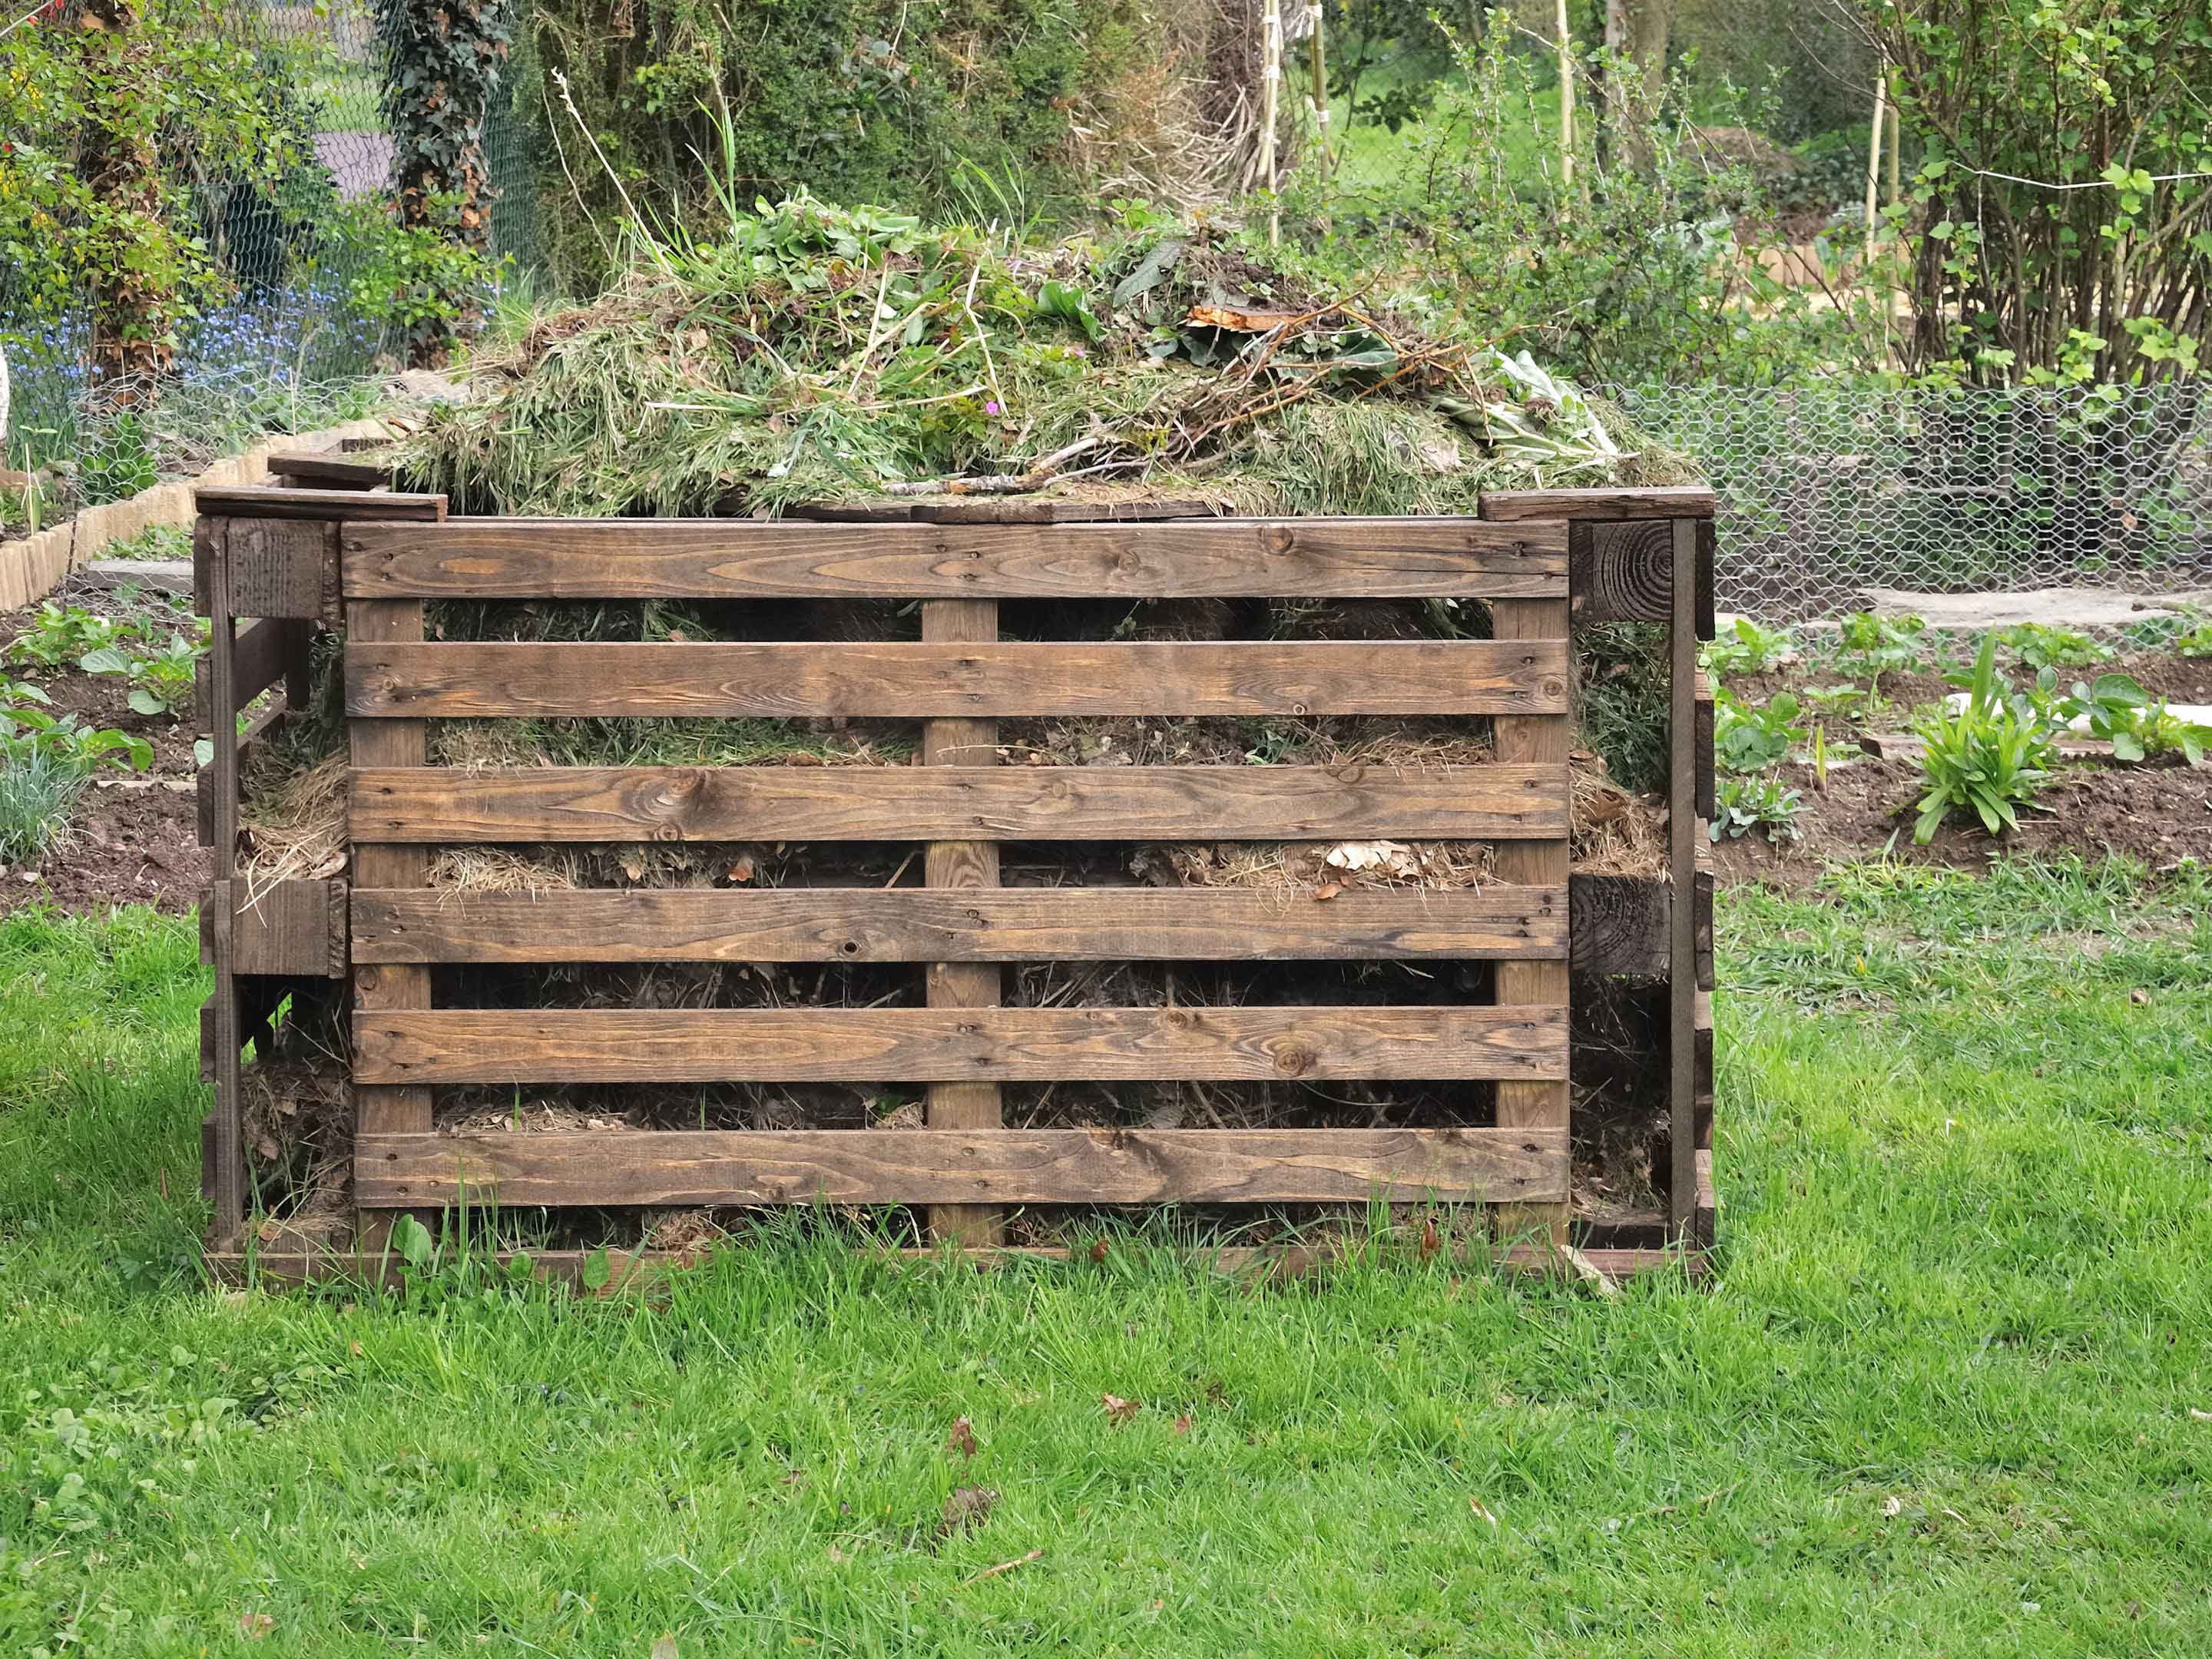 Jardinage - Le compost, faut-il le faire en tas ou en bac